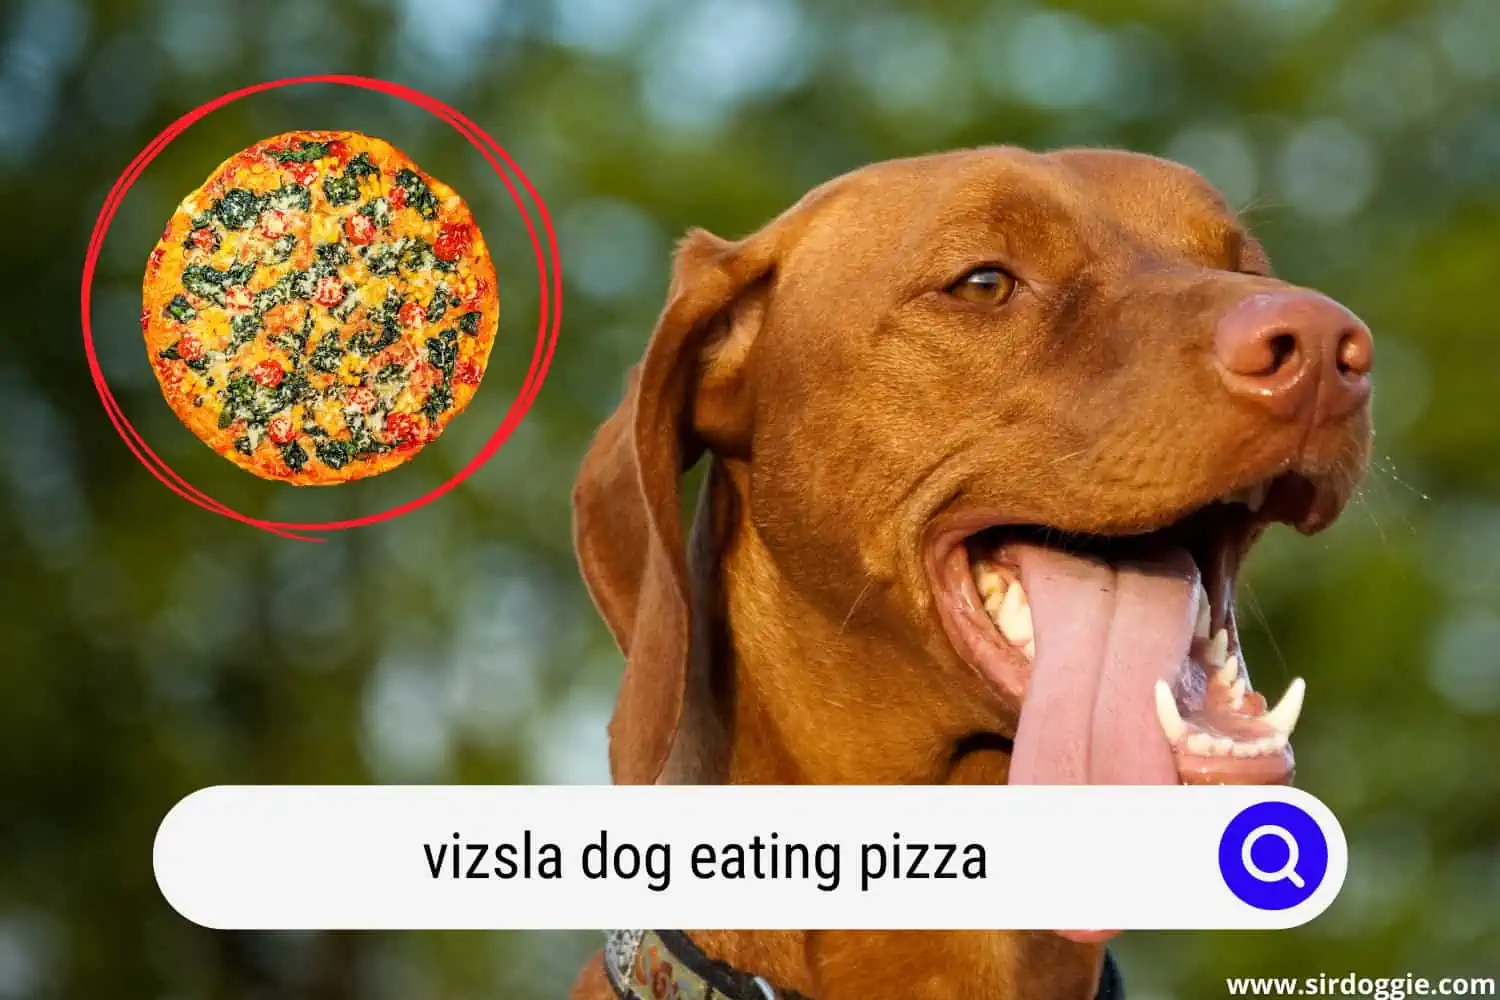 Vizsla dog and pizza